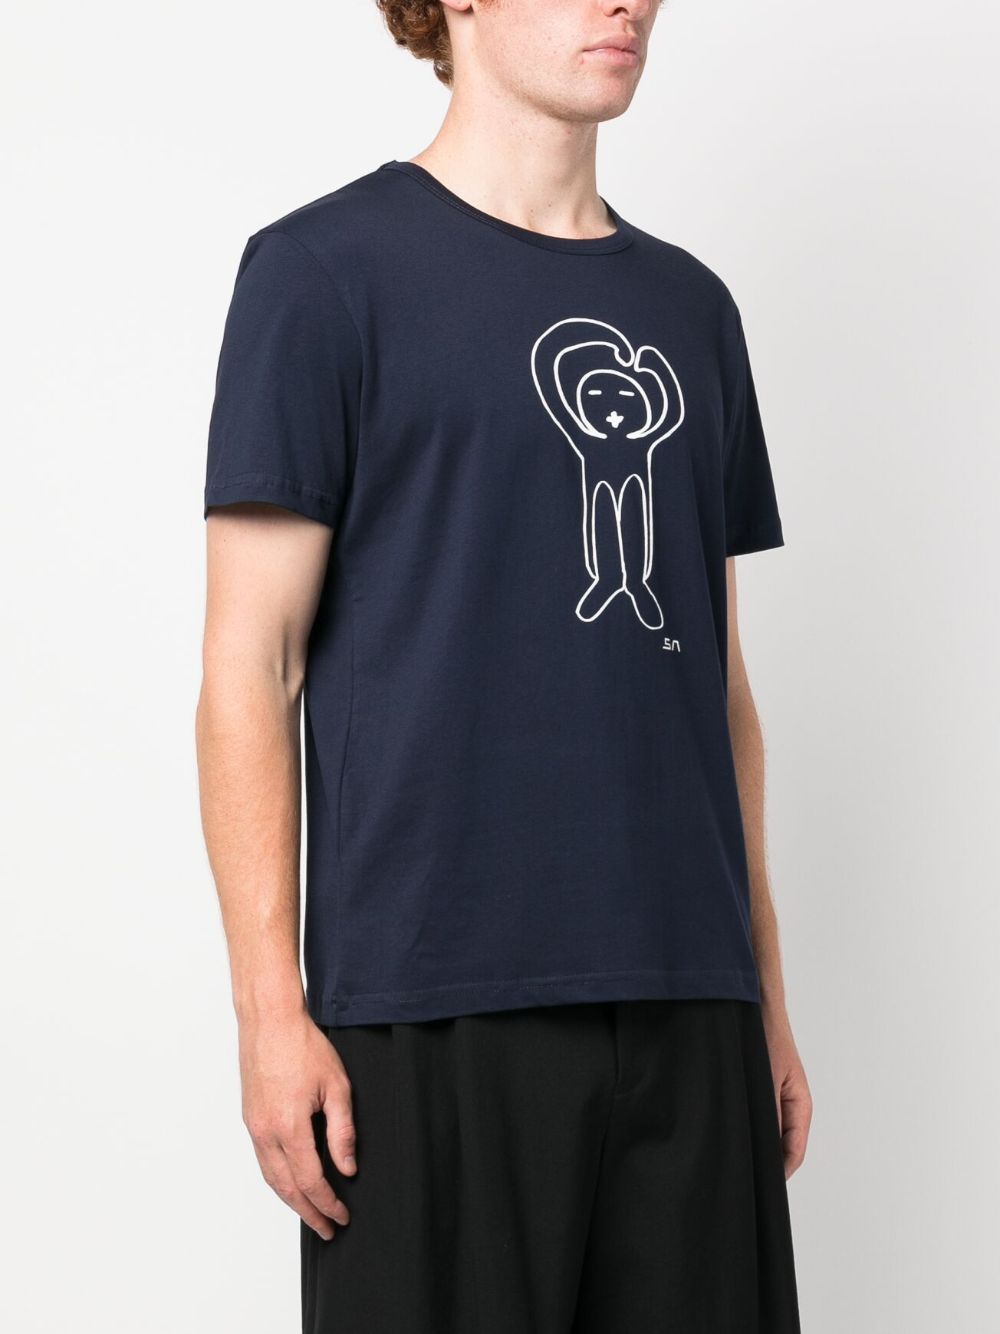 Société Anonyme Graphic-Print Cotton T-Shirt